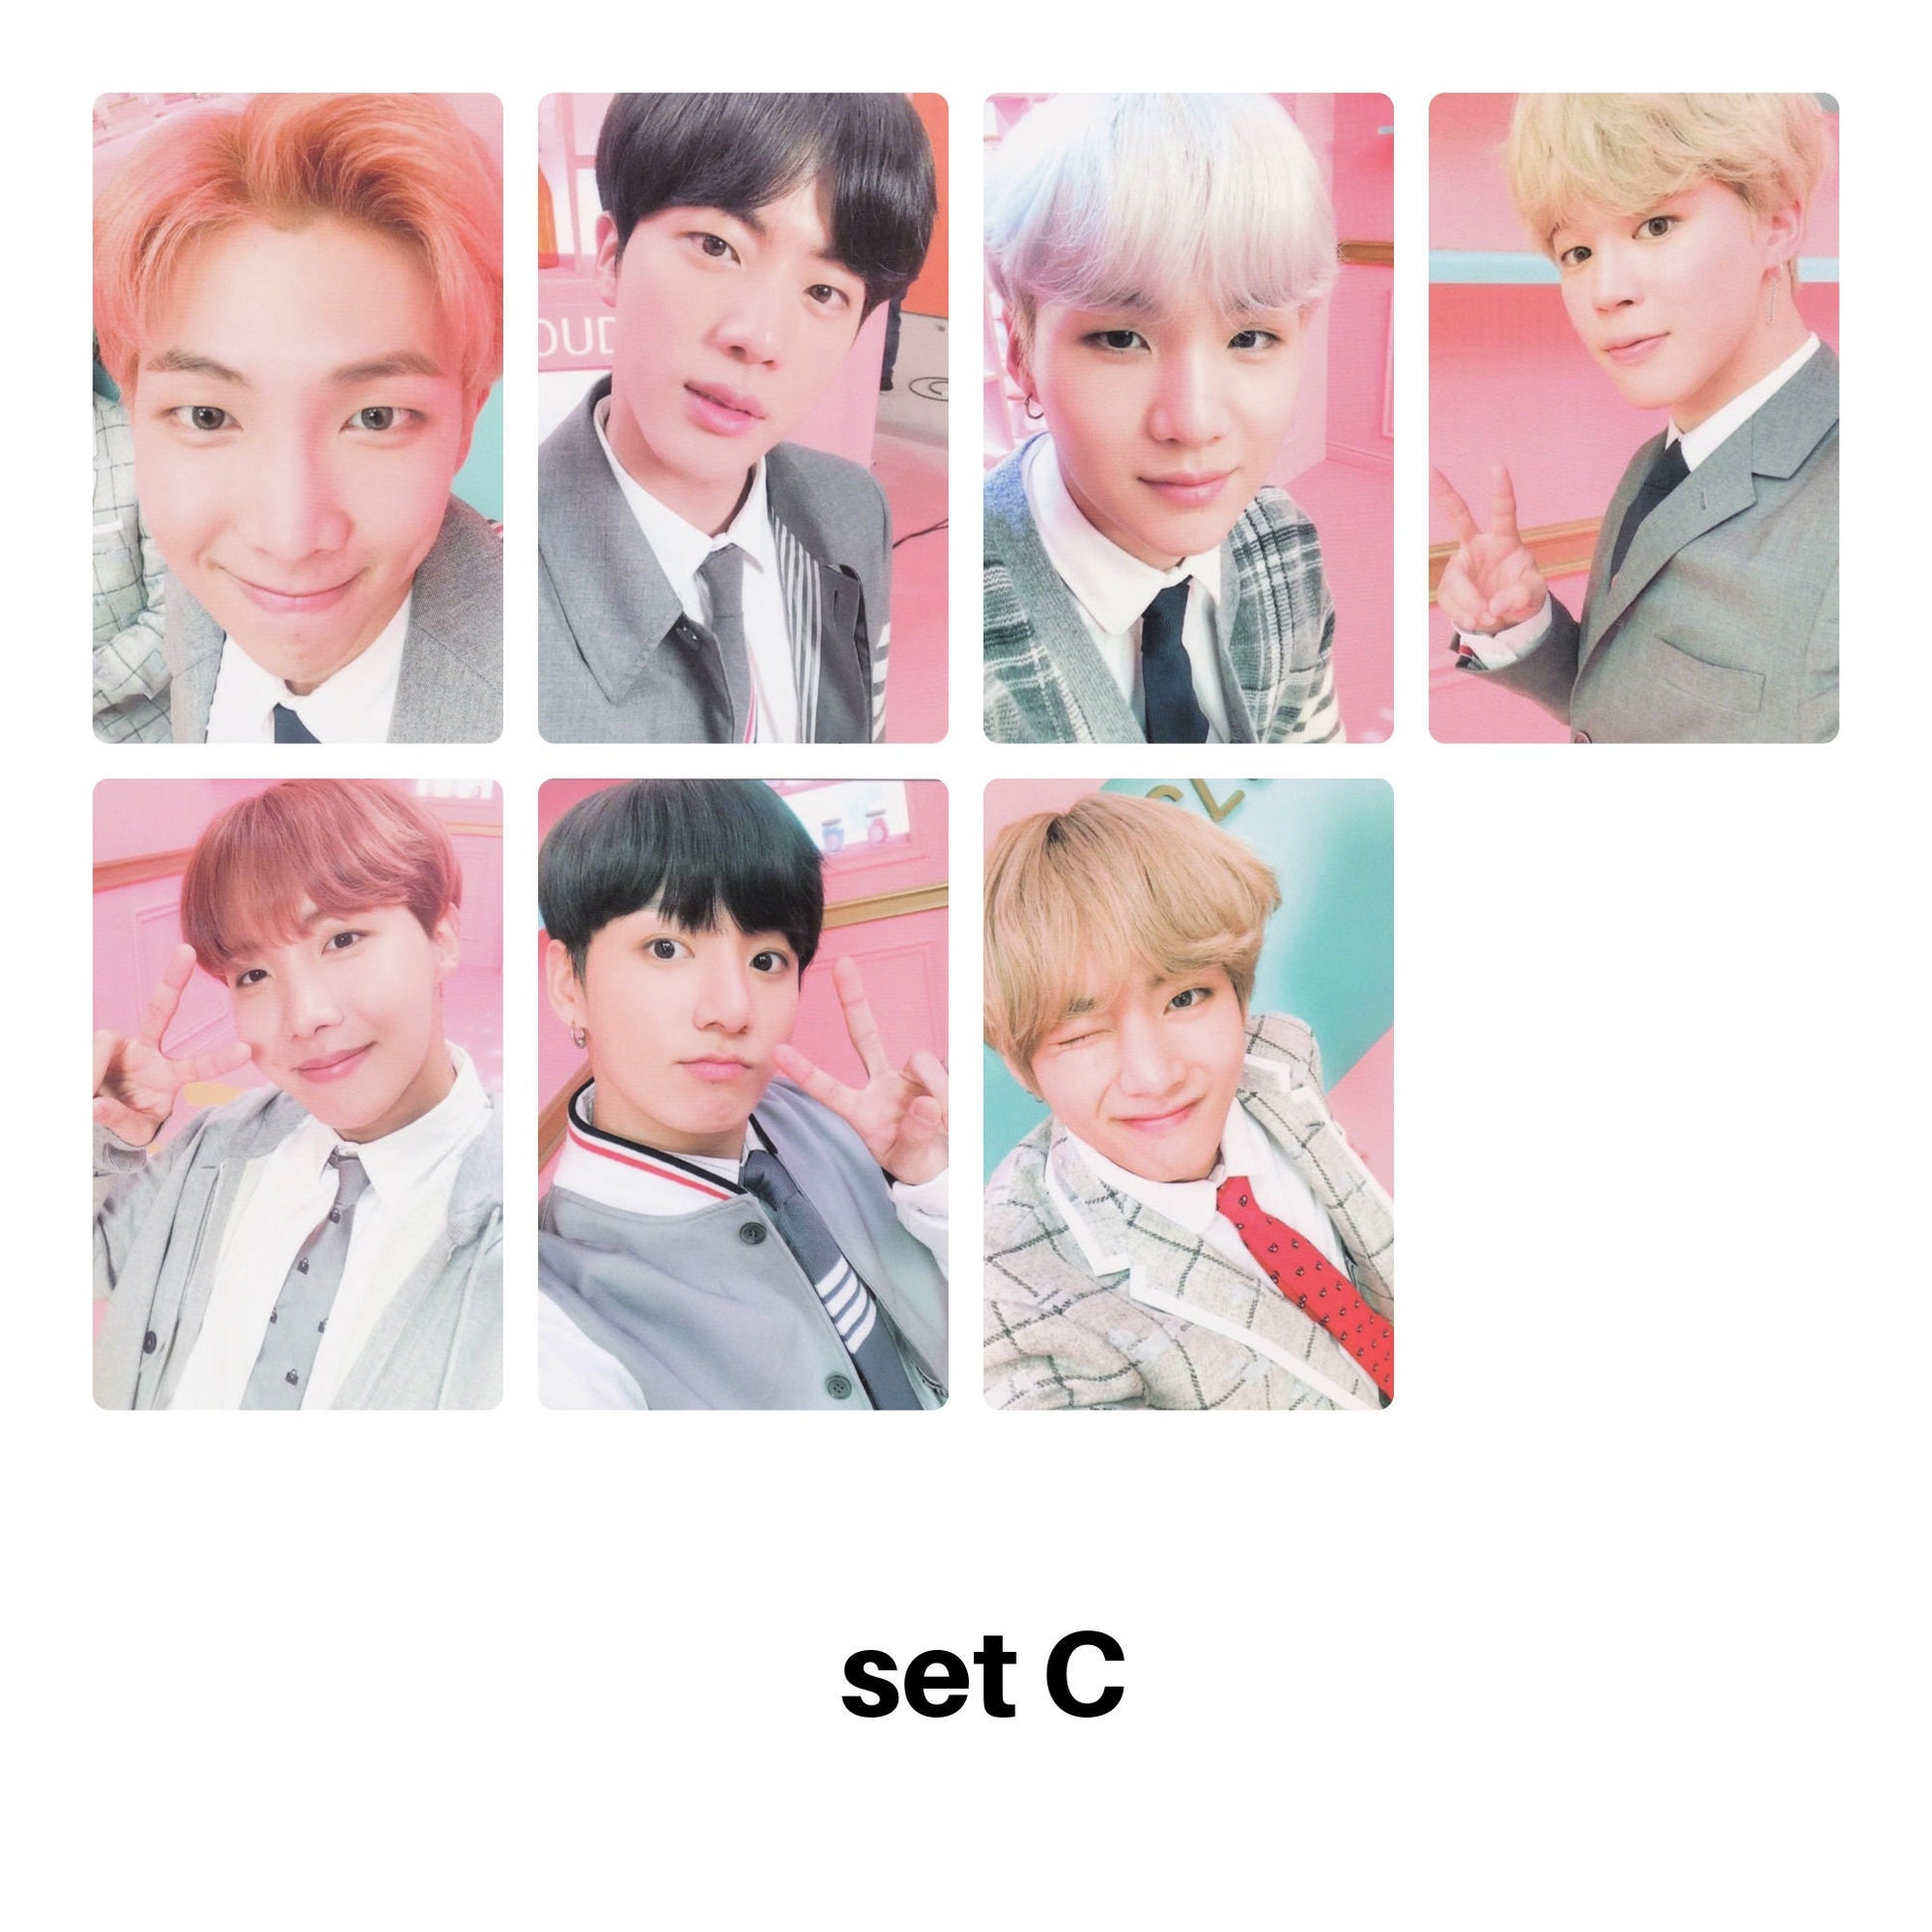 BTS Photocards